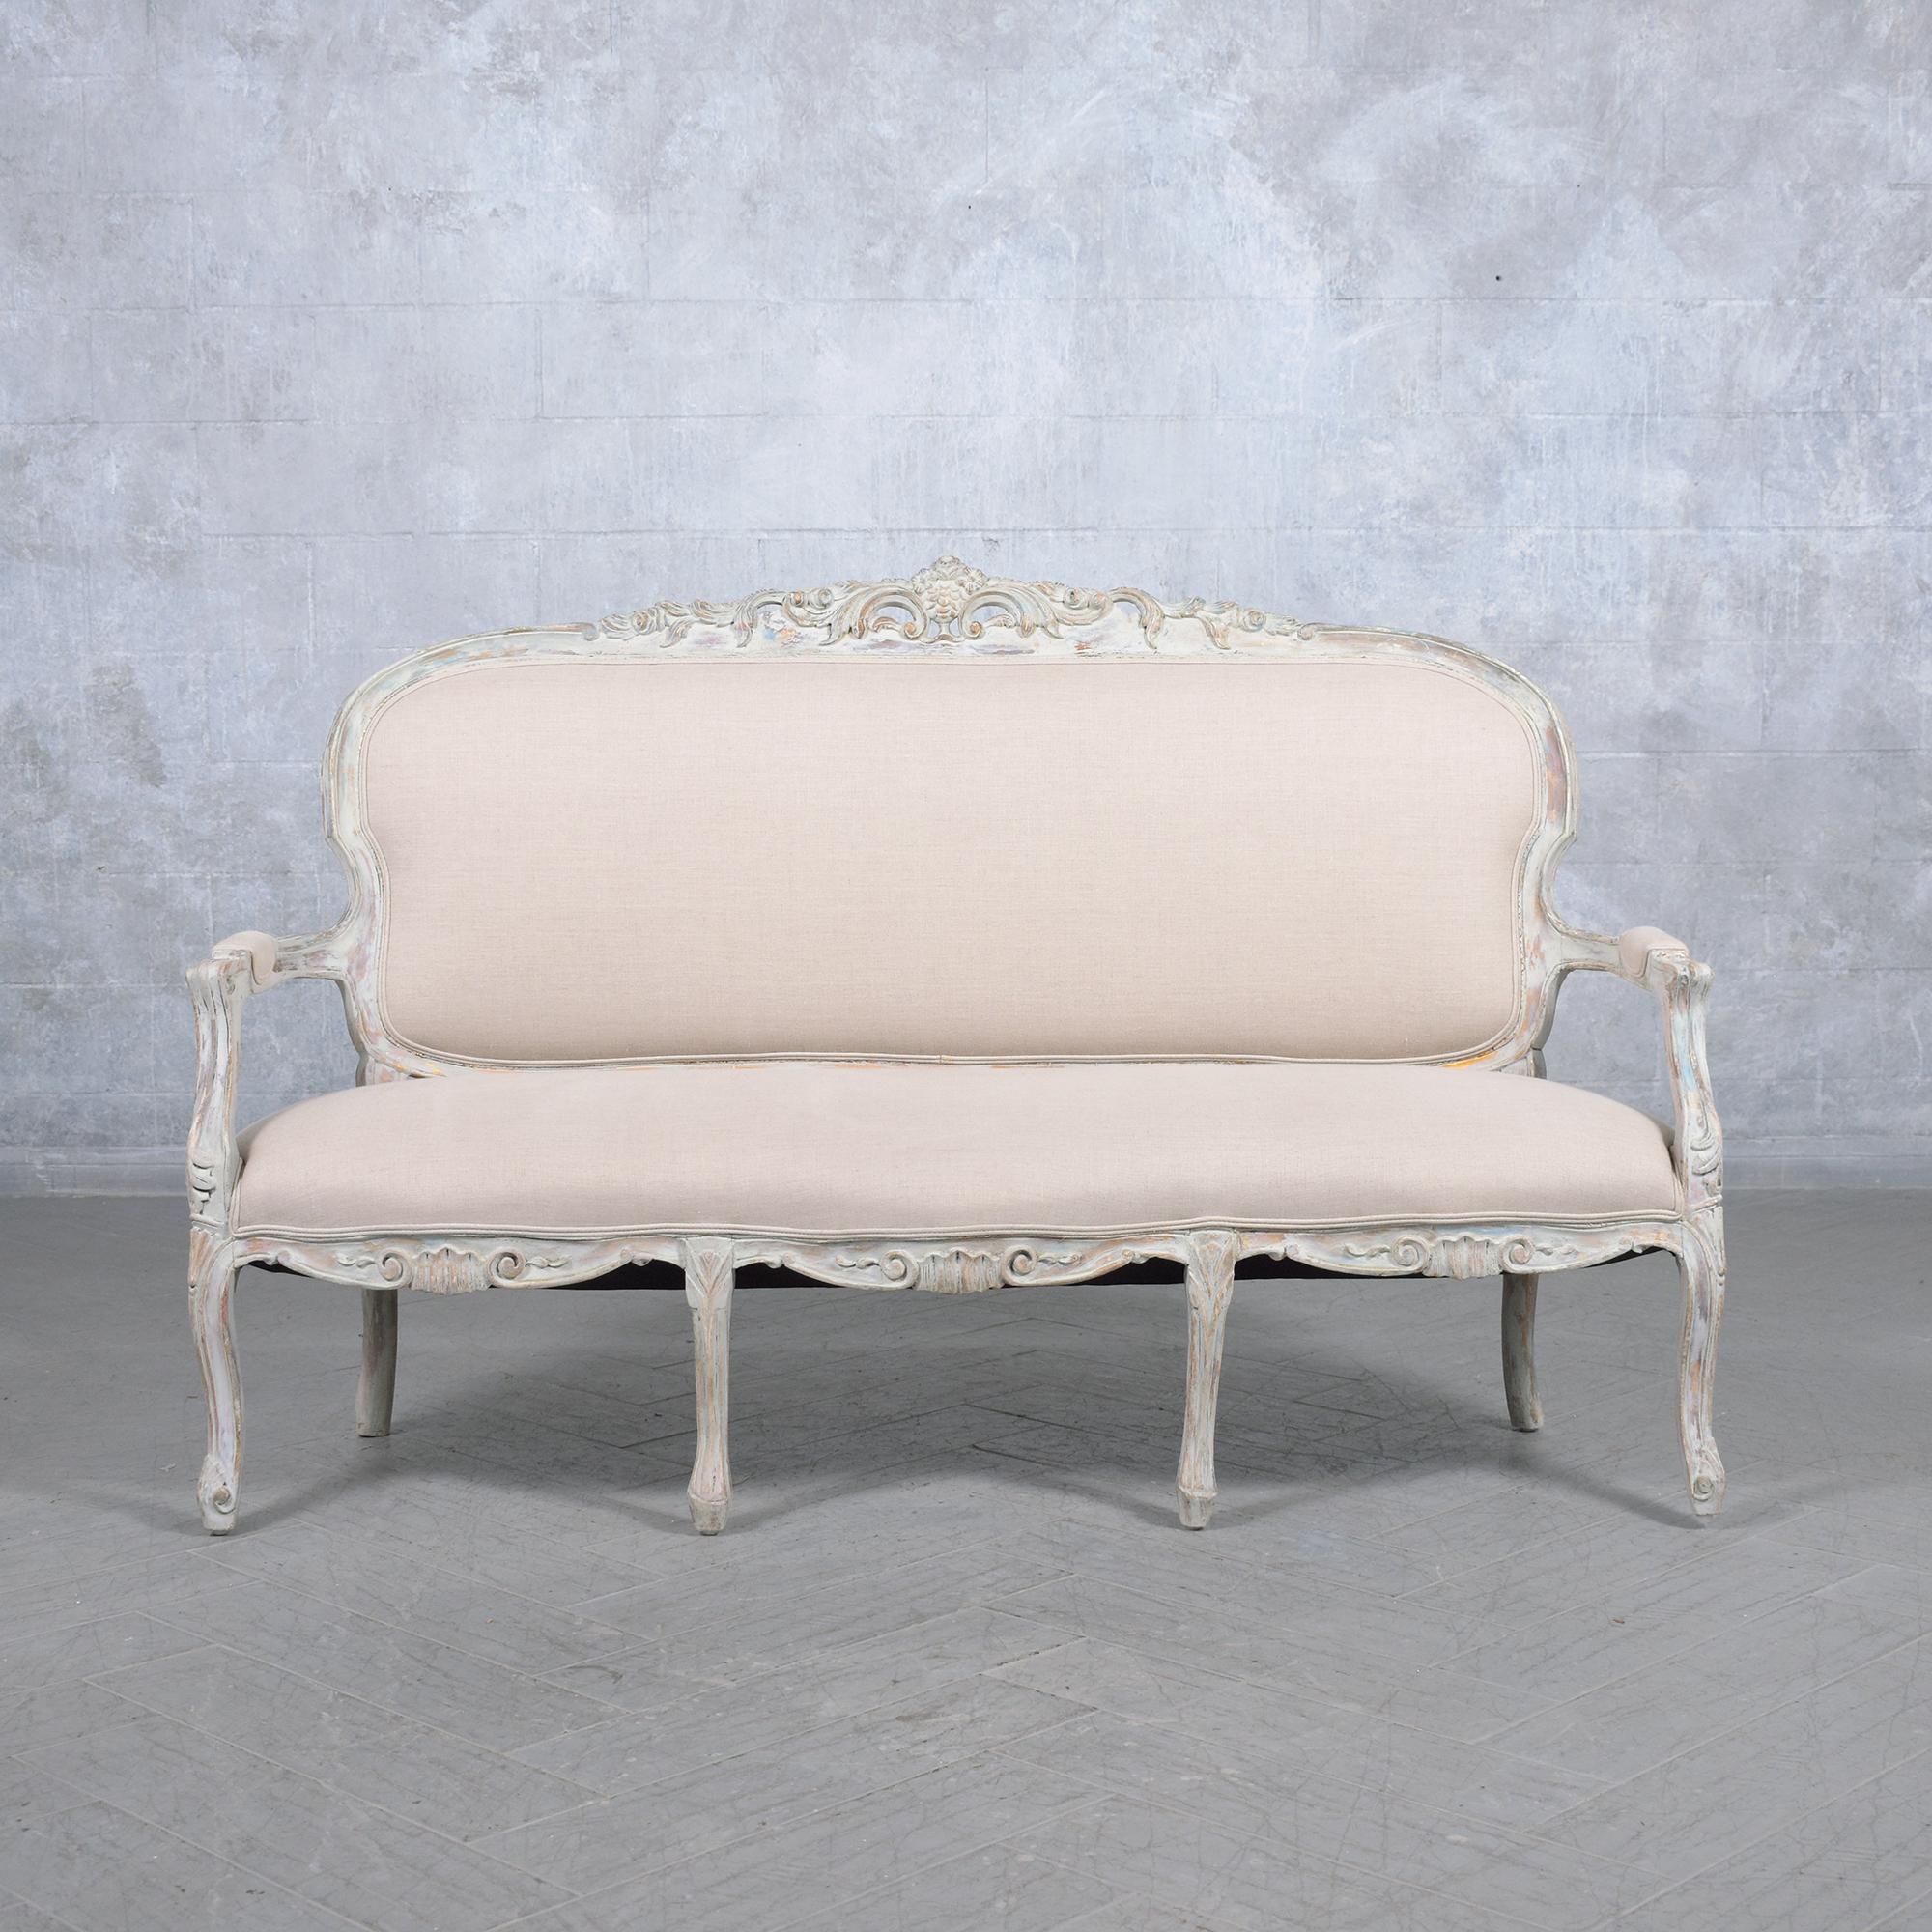 Versetzen Sie sich in die Vergangenheit mit unserem französischen Sofa aus dem Jahr 1900, einem Meisterwerk der Handwerkskunst und klassischen Schönheit. Von unserem Expertenteam fachmännisch restauriert, bewahrt dieses Vintage-Schmuckstück seine